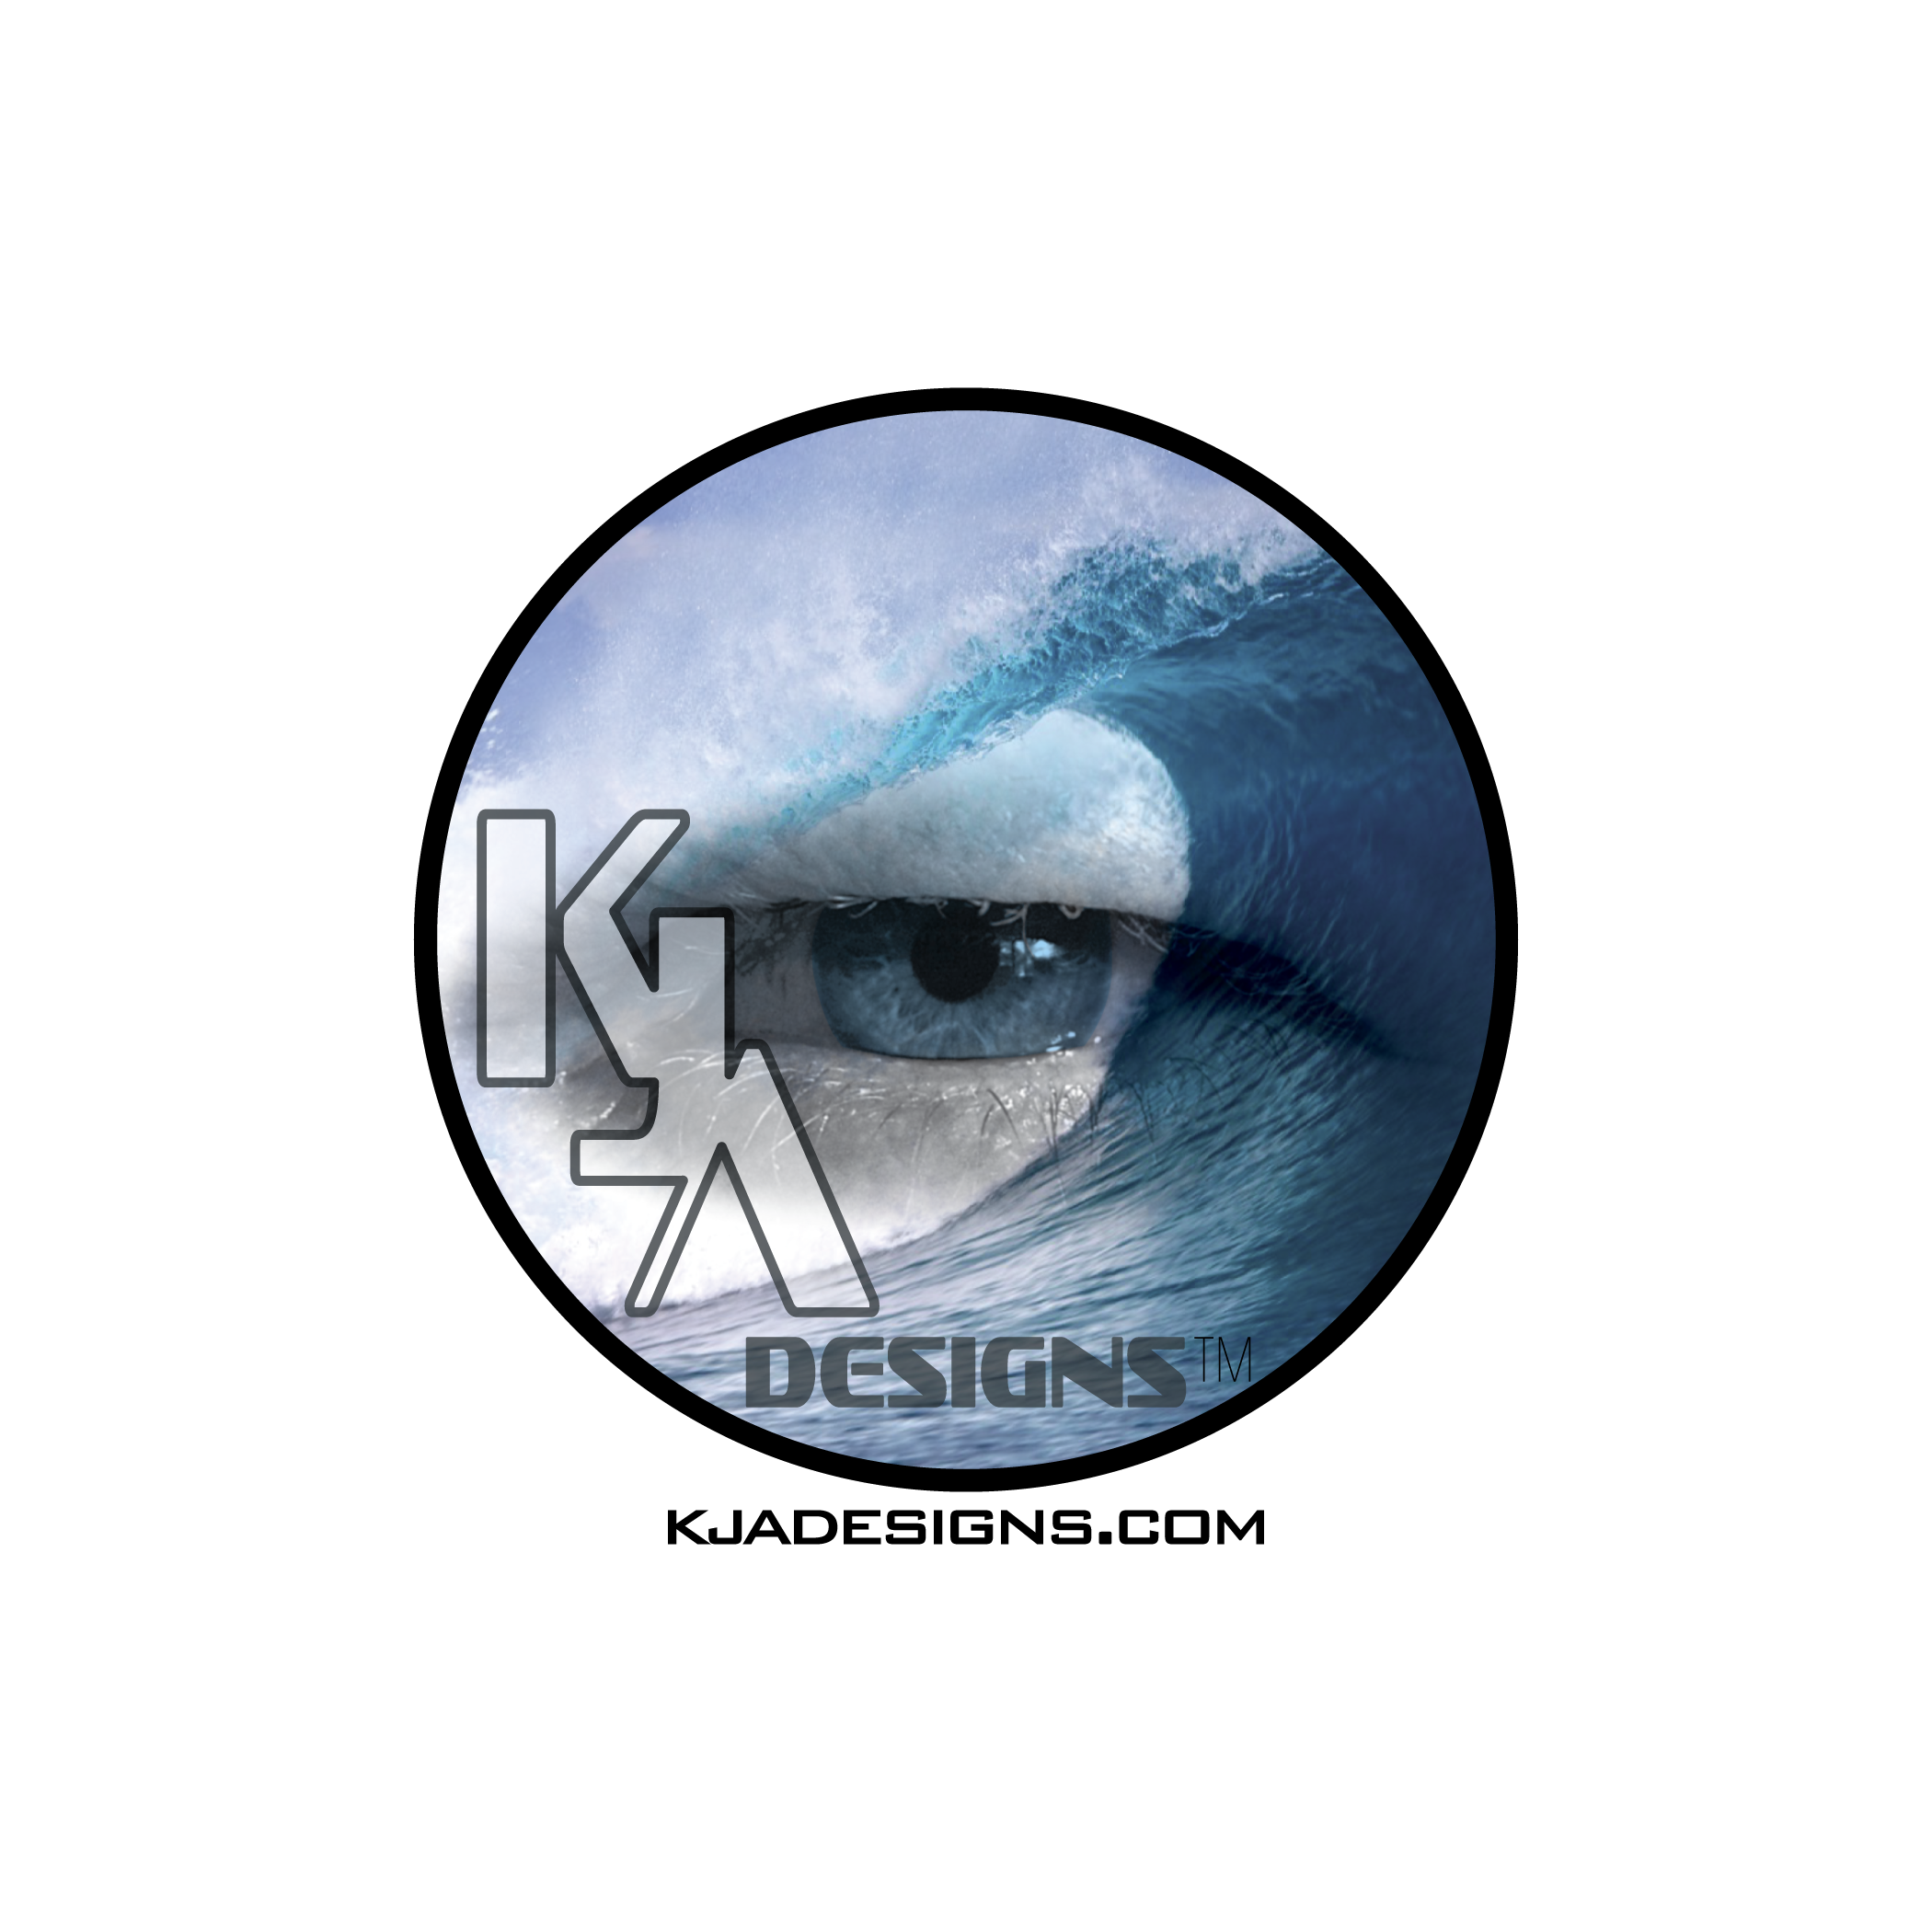 KJA Designs Inc.™ eye 2B